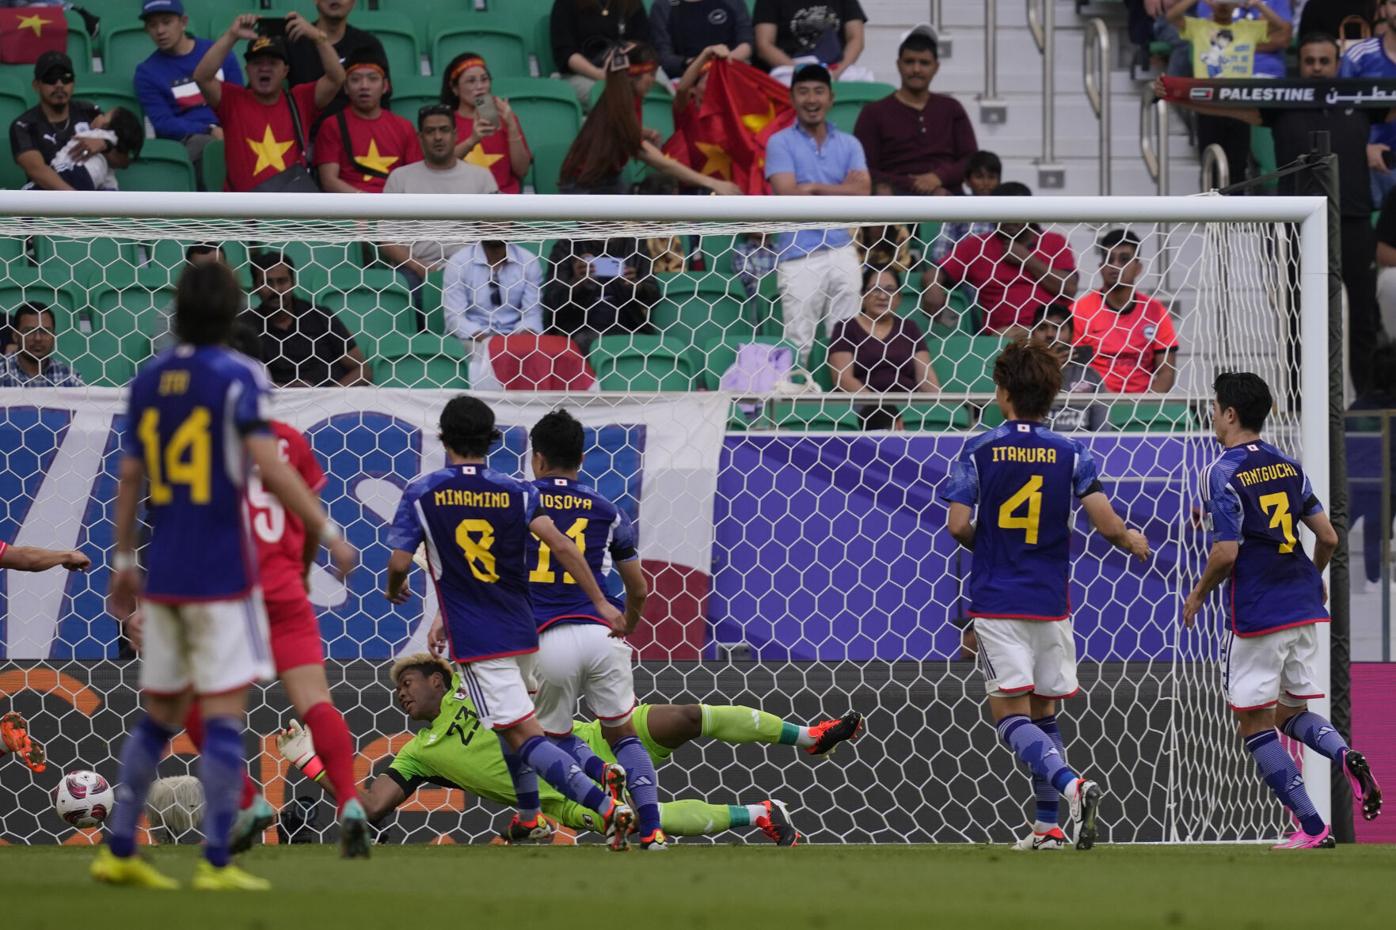 Cầu thủ từ chối M.U choáng ngợp trước tuyển Việt Nam - Bóng Đá